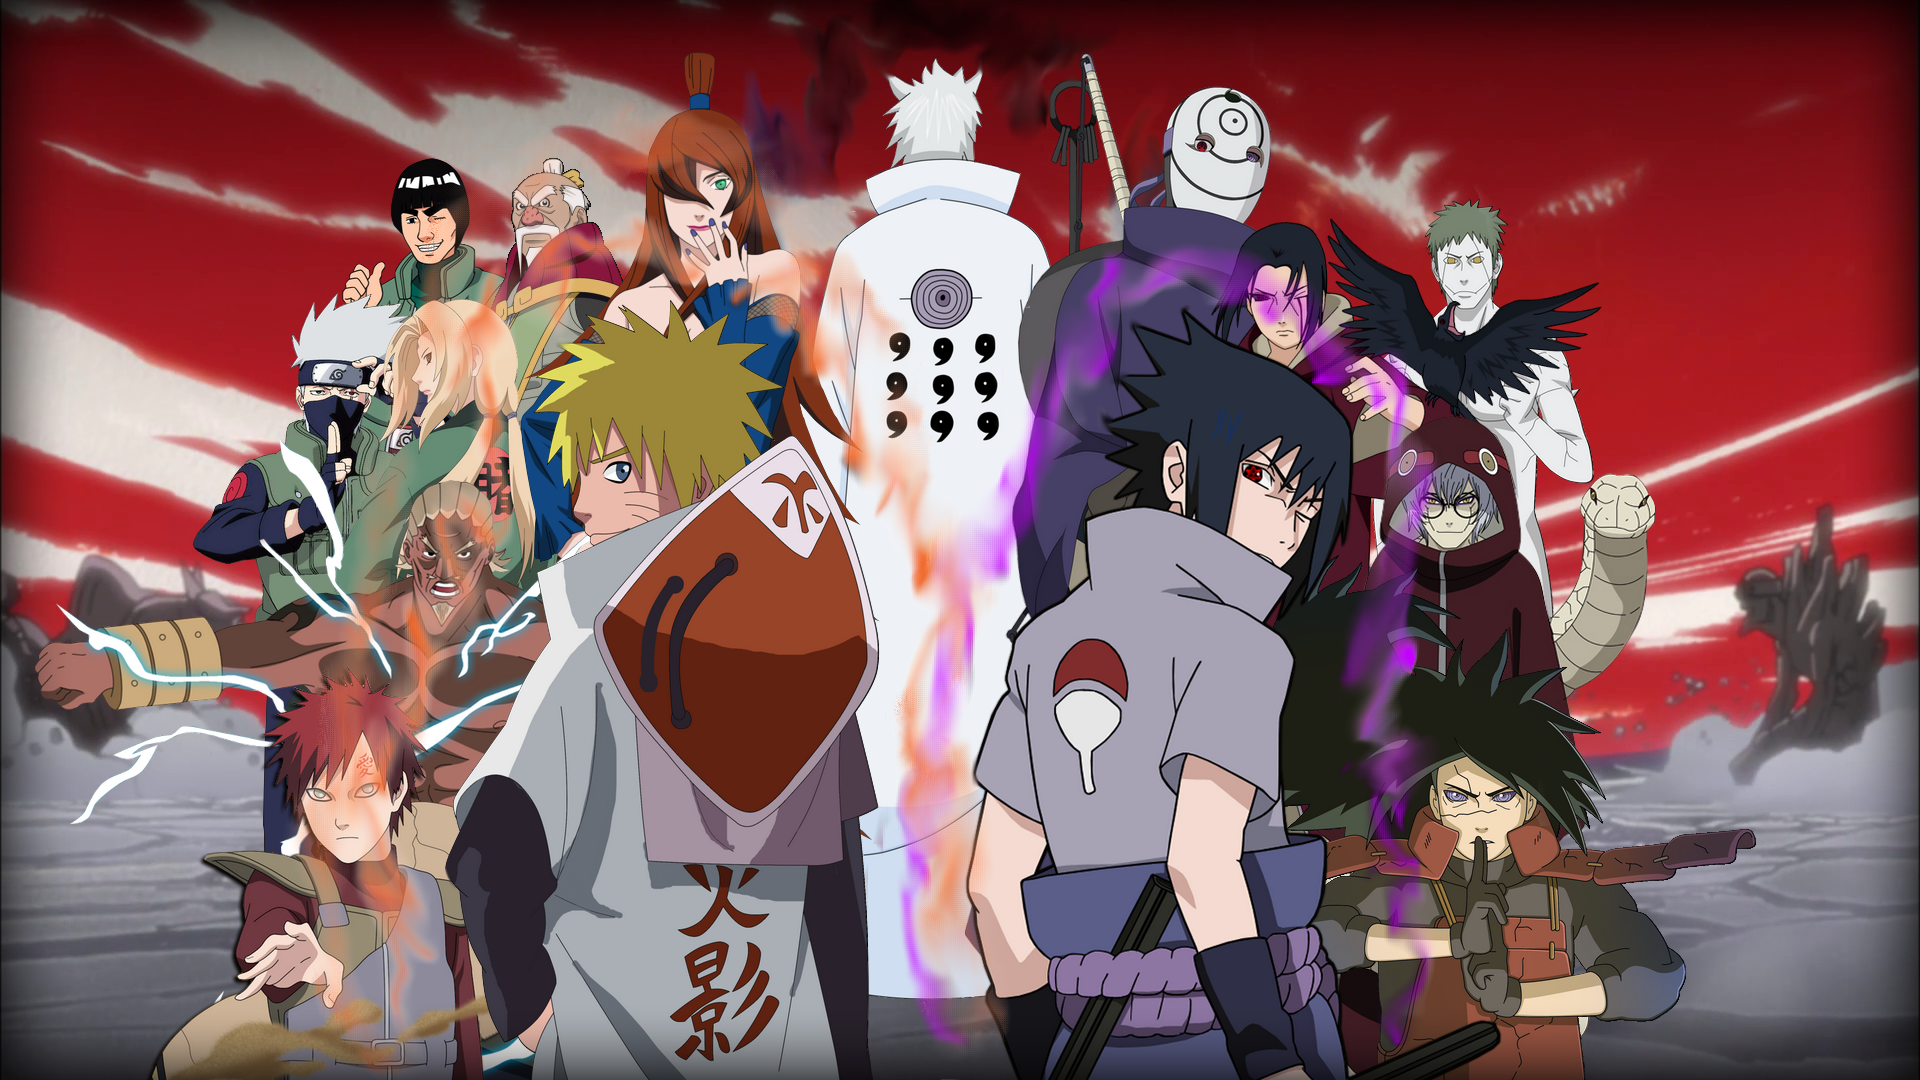 Đánh giá sức mạnh: Cùng đồng hành với Naruto, bạn sẽ được hòa mình vào thế giới Ninja đầy thử thách và sức mạnh. Hãy đánh giá khả năng mình bằng các trò chơi và sự kiện hấp dẫn như đo đường chân lý của bạn, tay đôi võ thuật, cùng nhiều cuộc thi hấp dẫn khác.